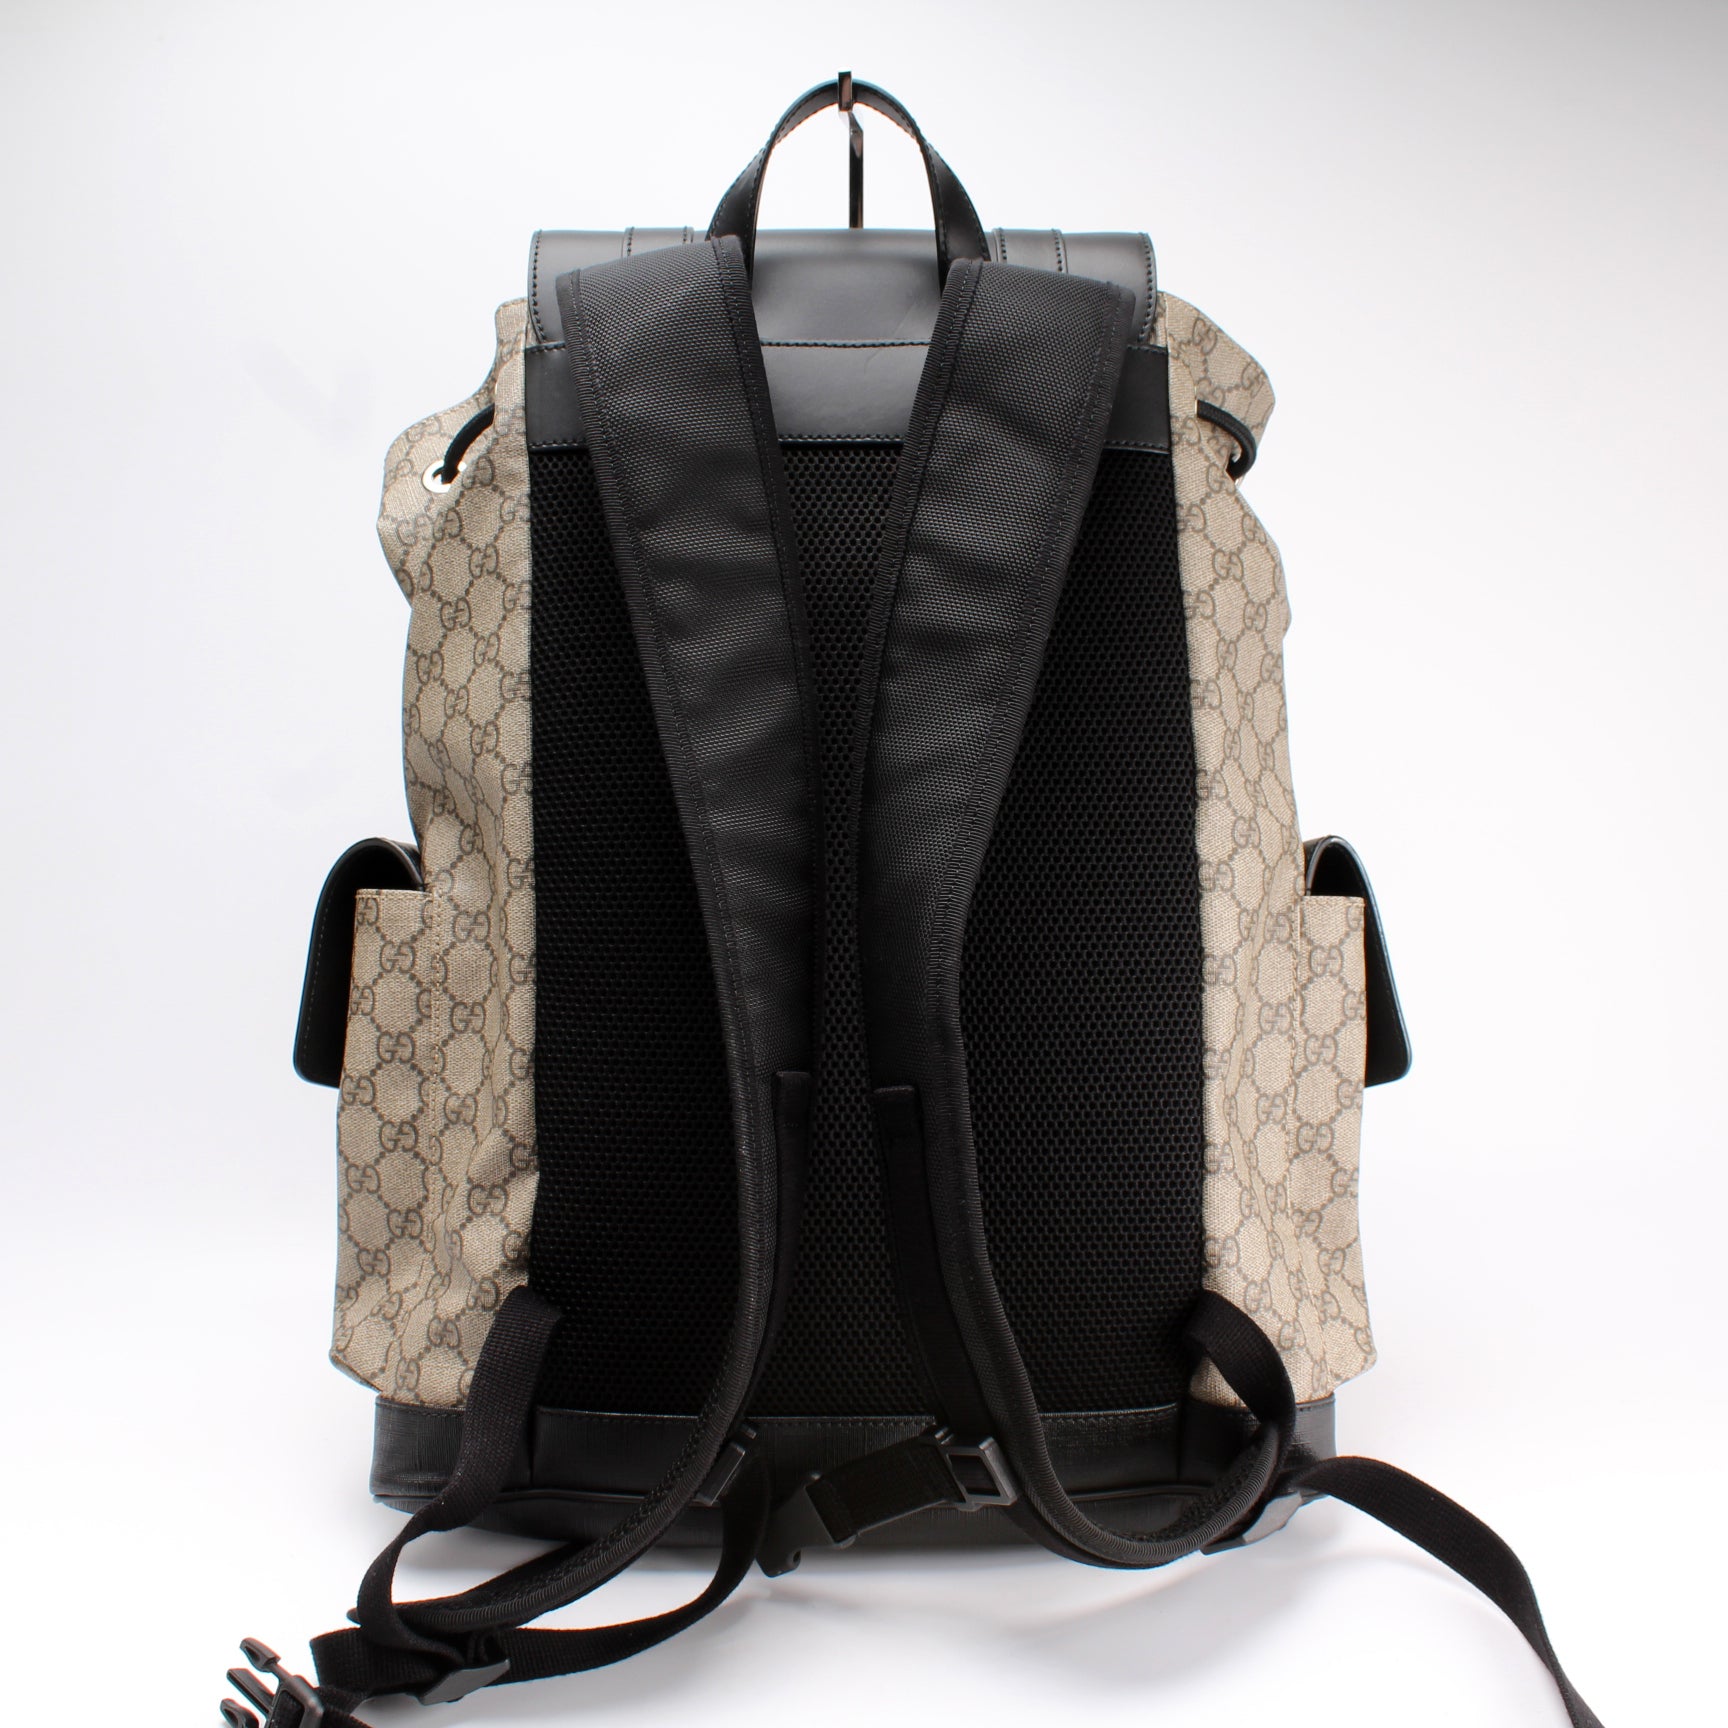 450958 GG Supreme Backpack – Keeks Designer Handbags